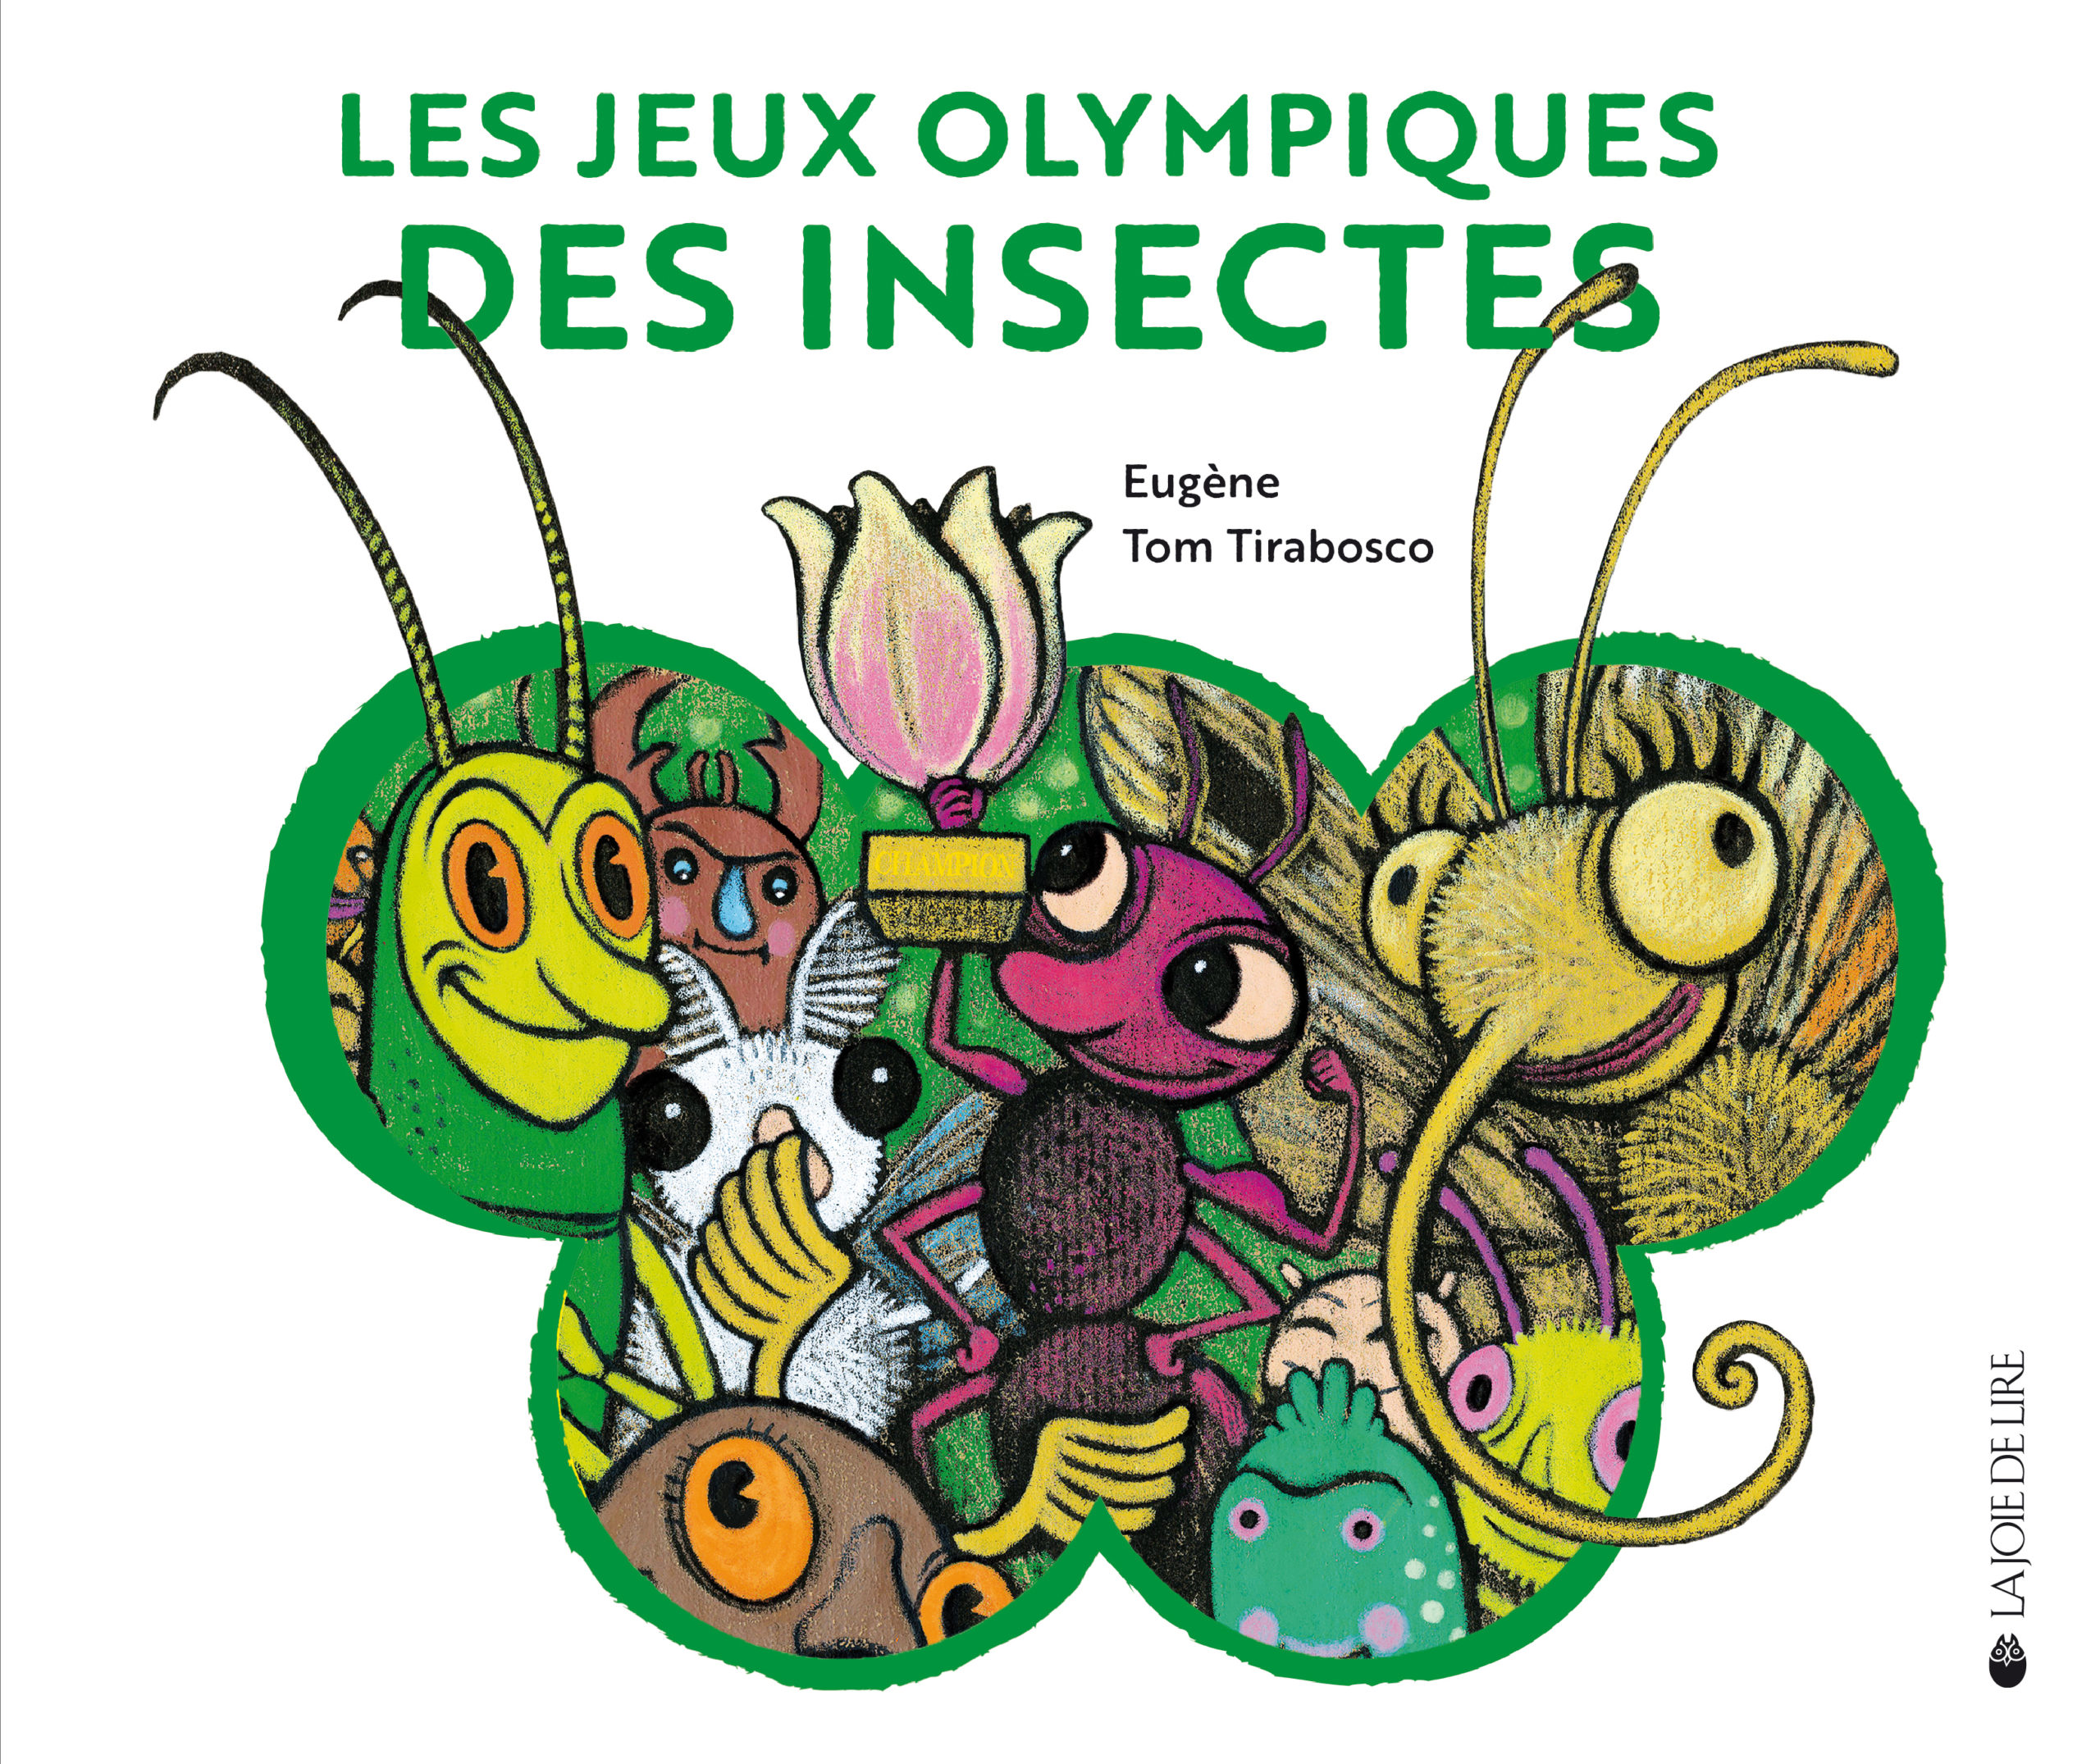 Les Jeux Olympiques des insectes - La Joie de lire